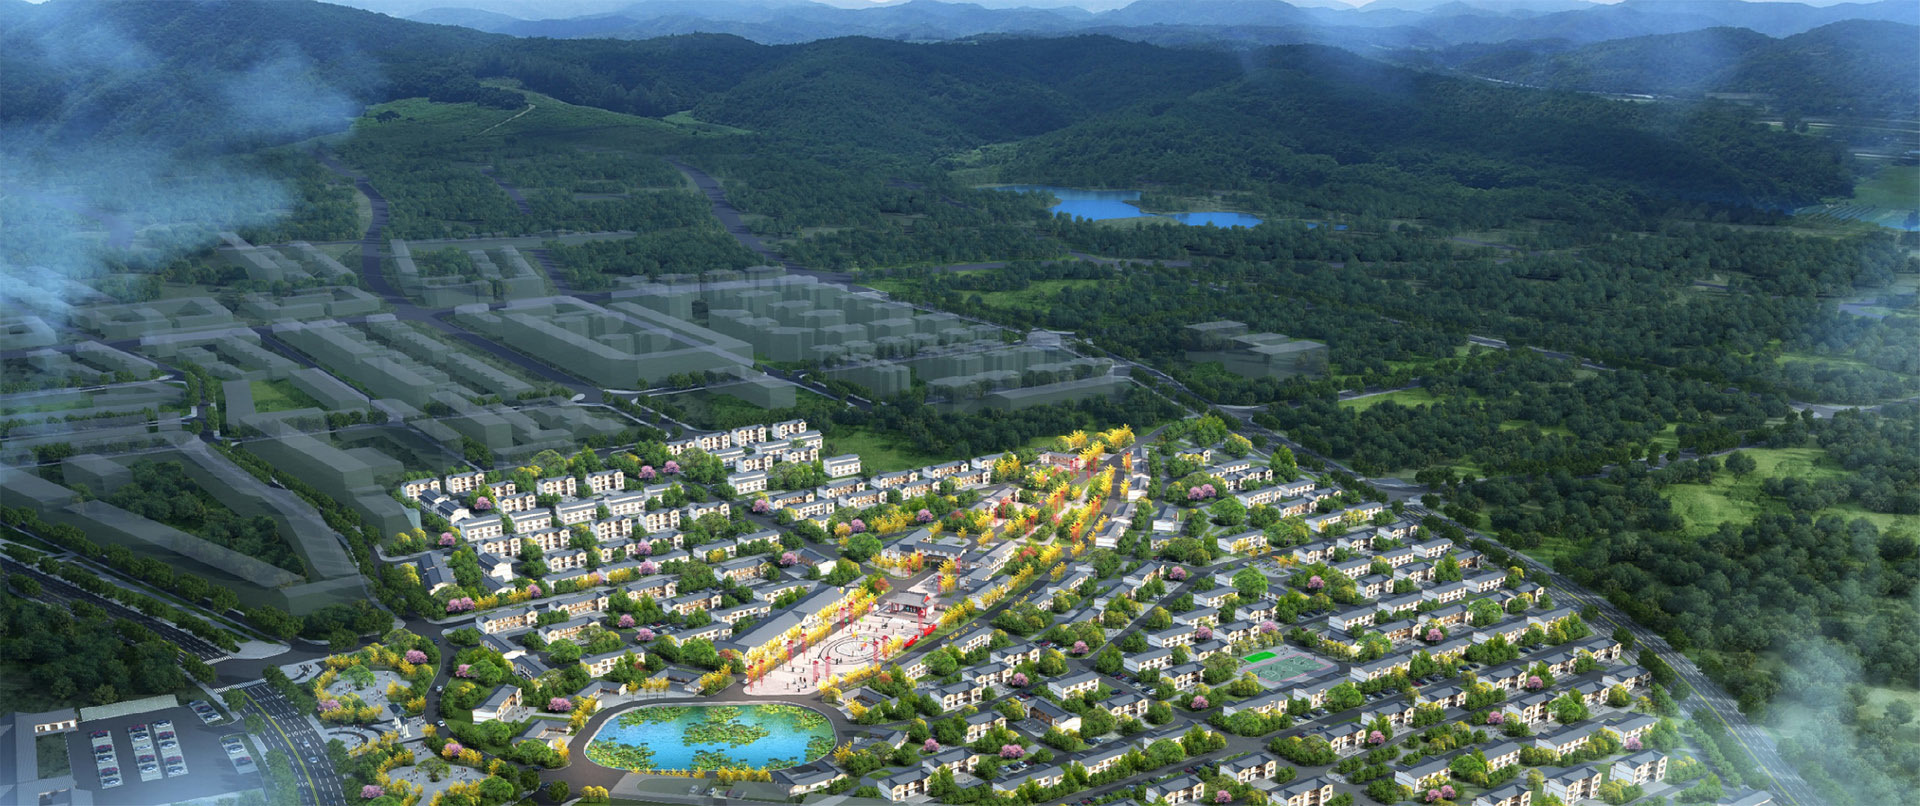 广安协兴生态文化旅游园区风貌整治规划设计